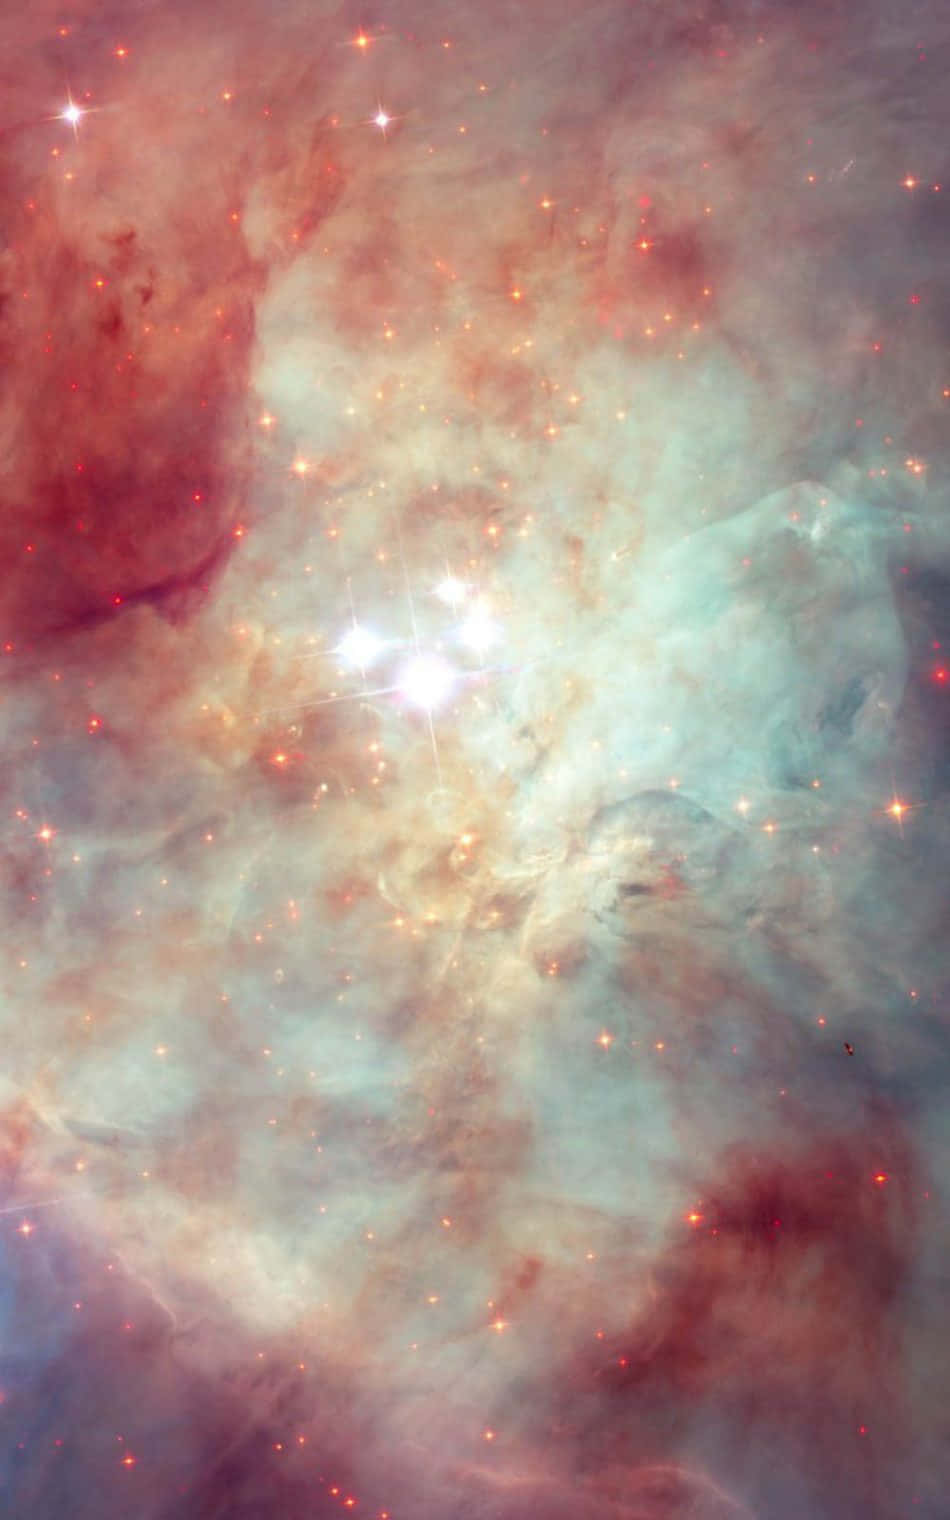 Unavista Impresionante De Una Nebulosa Colorida En El Espacio.